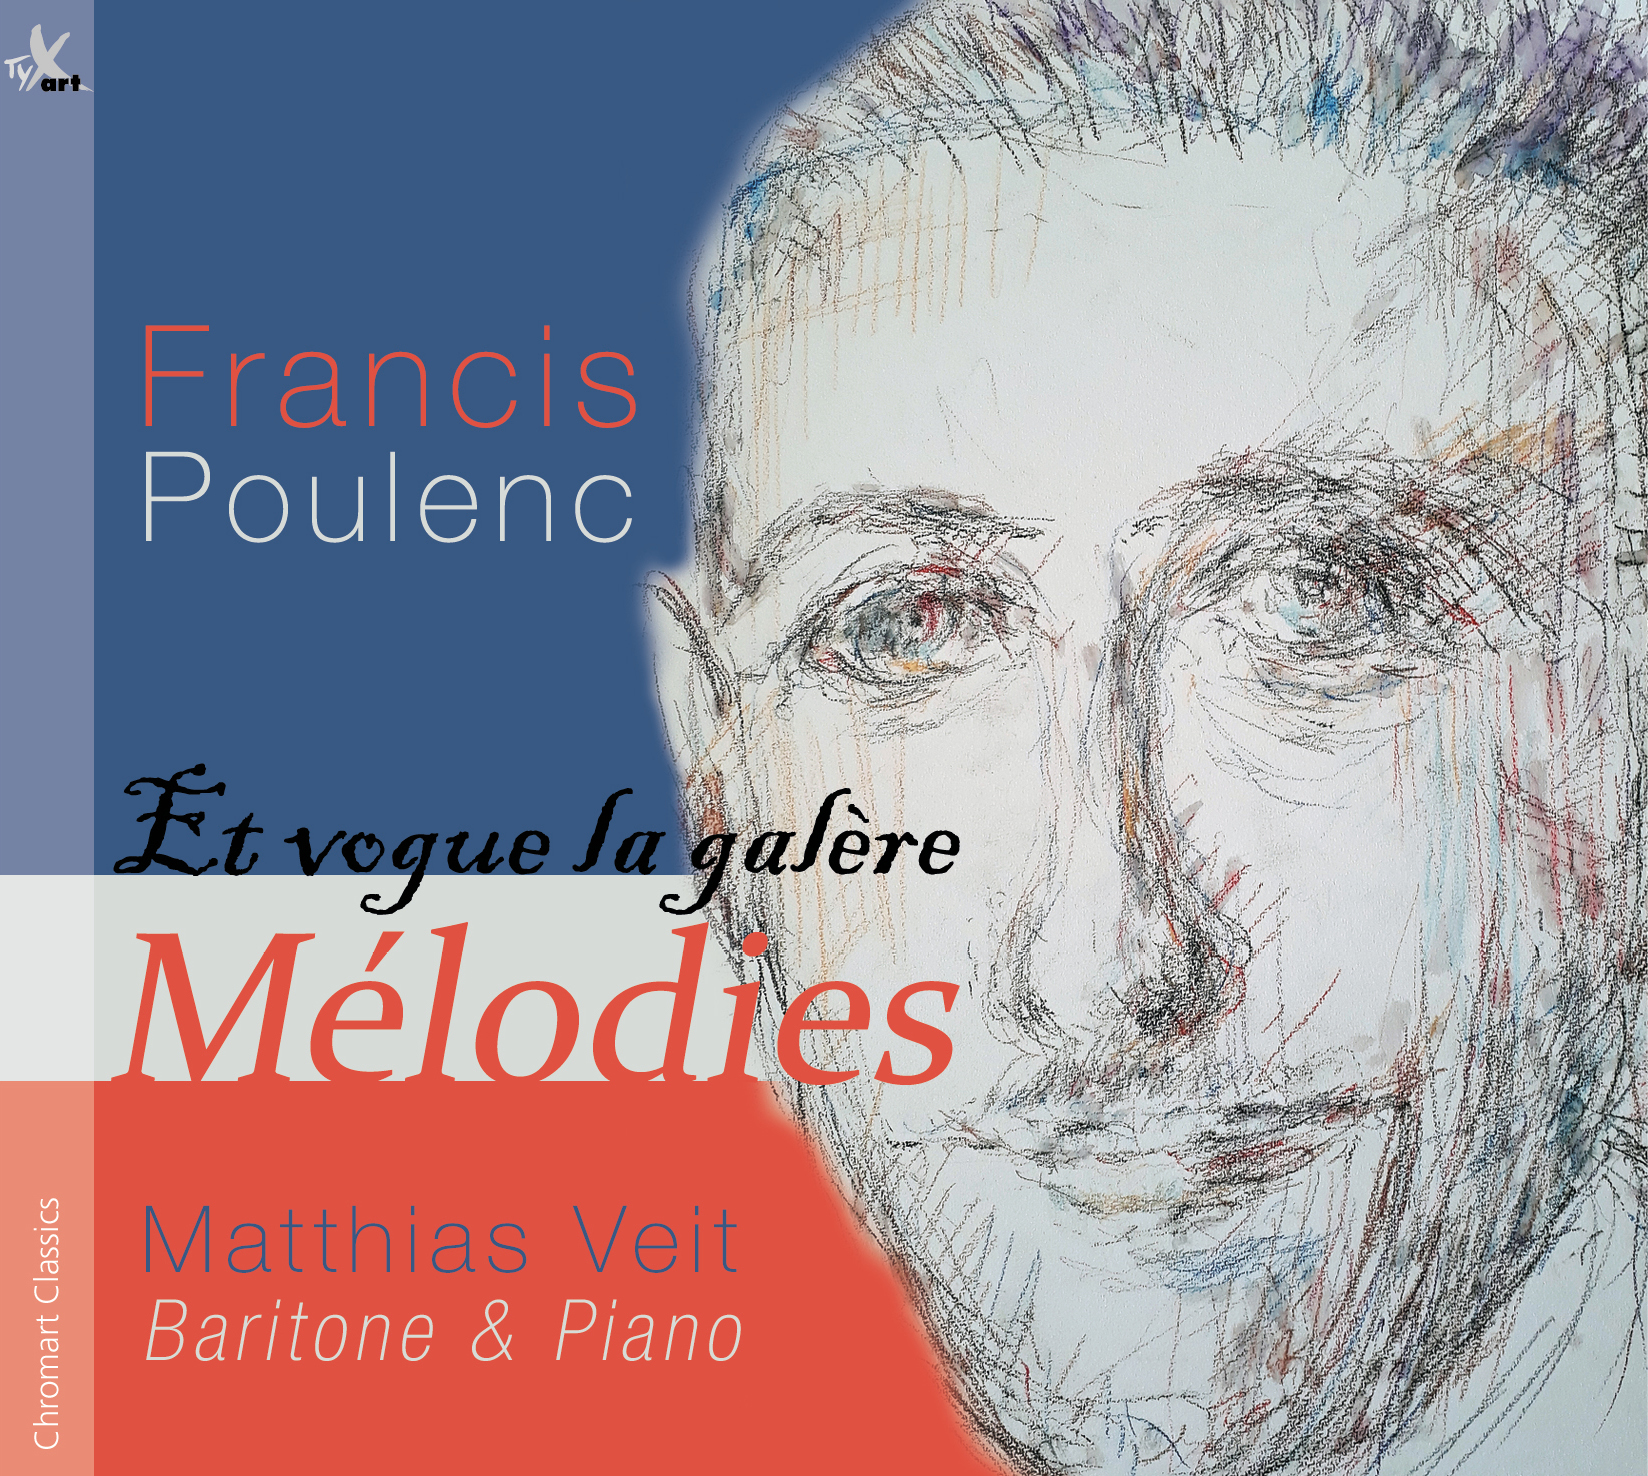 Francis Poulenc - Et vogue la galère - Melodies - Matthias Veit, Baritone and Piano